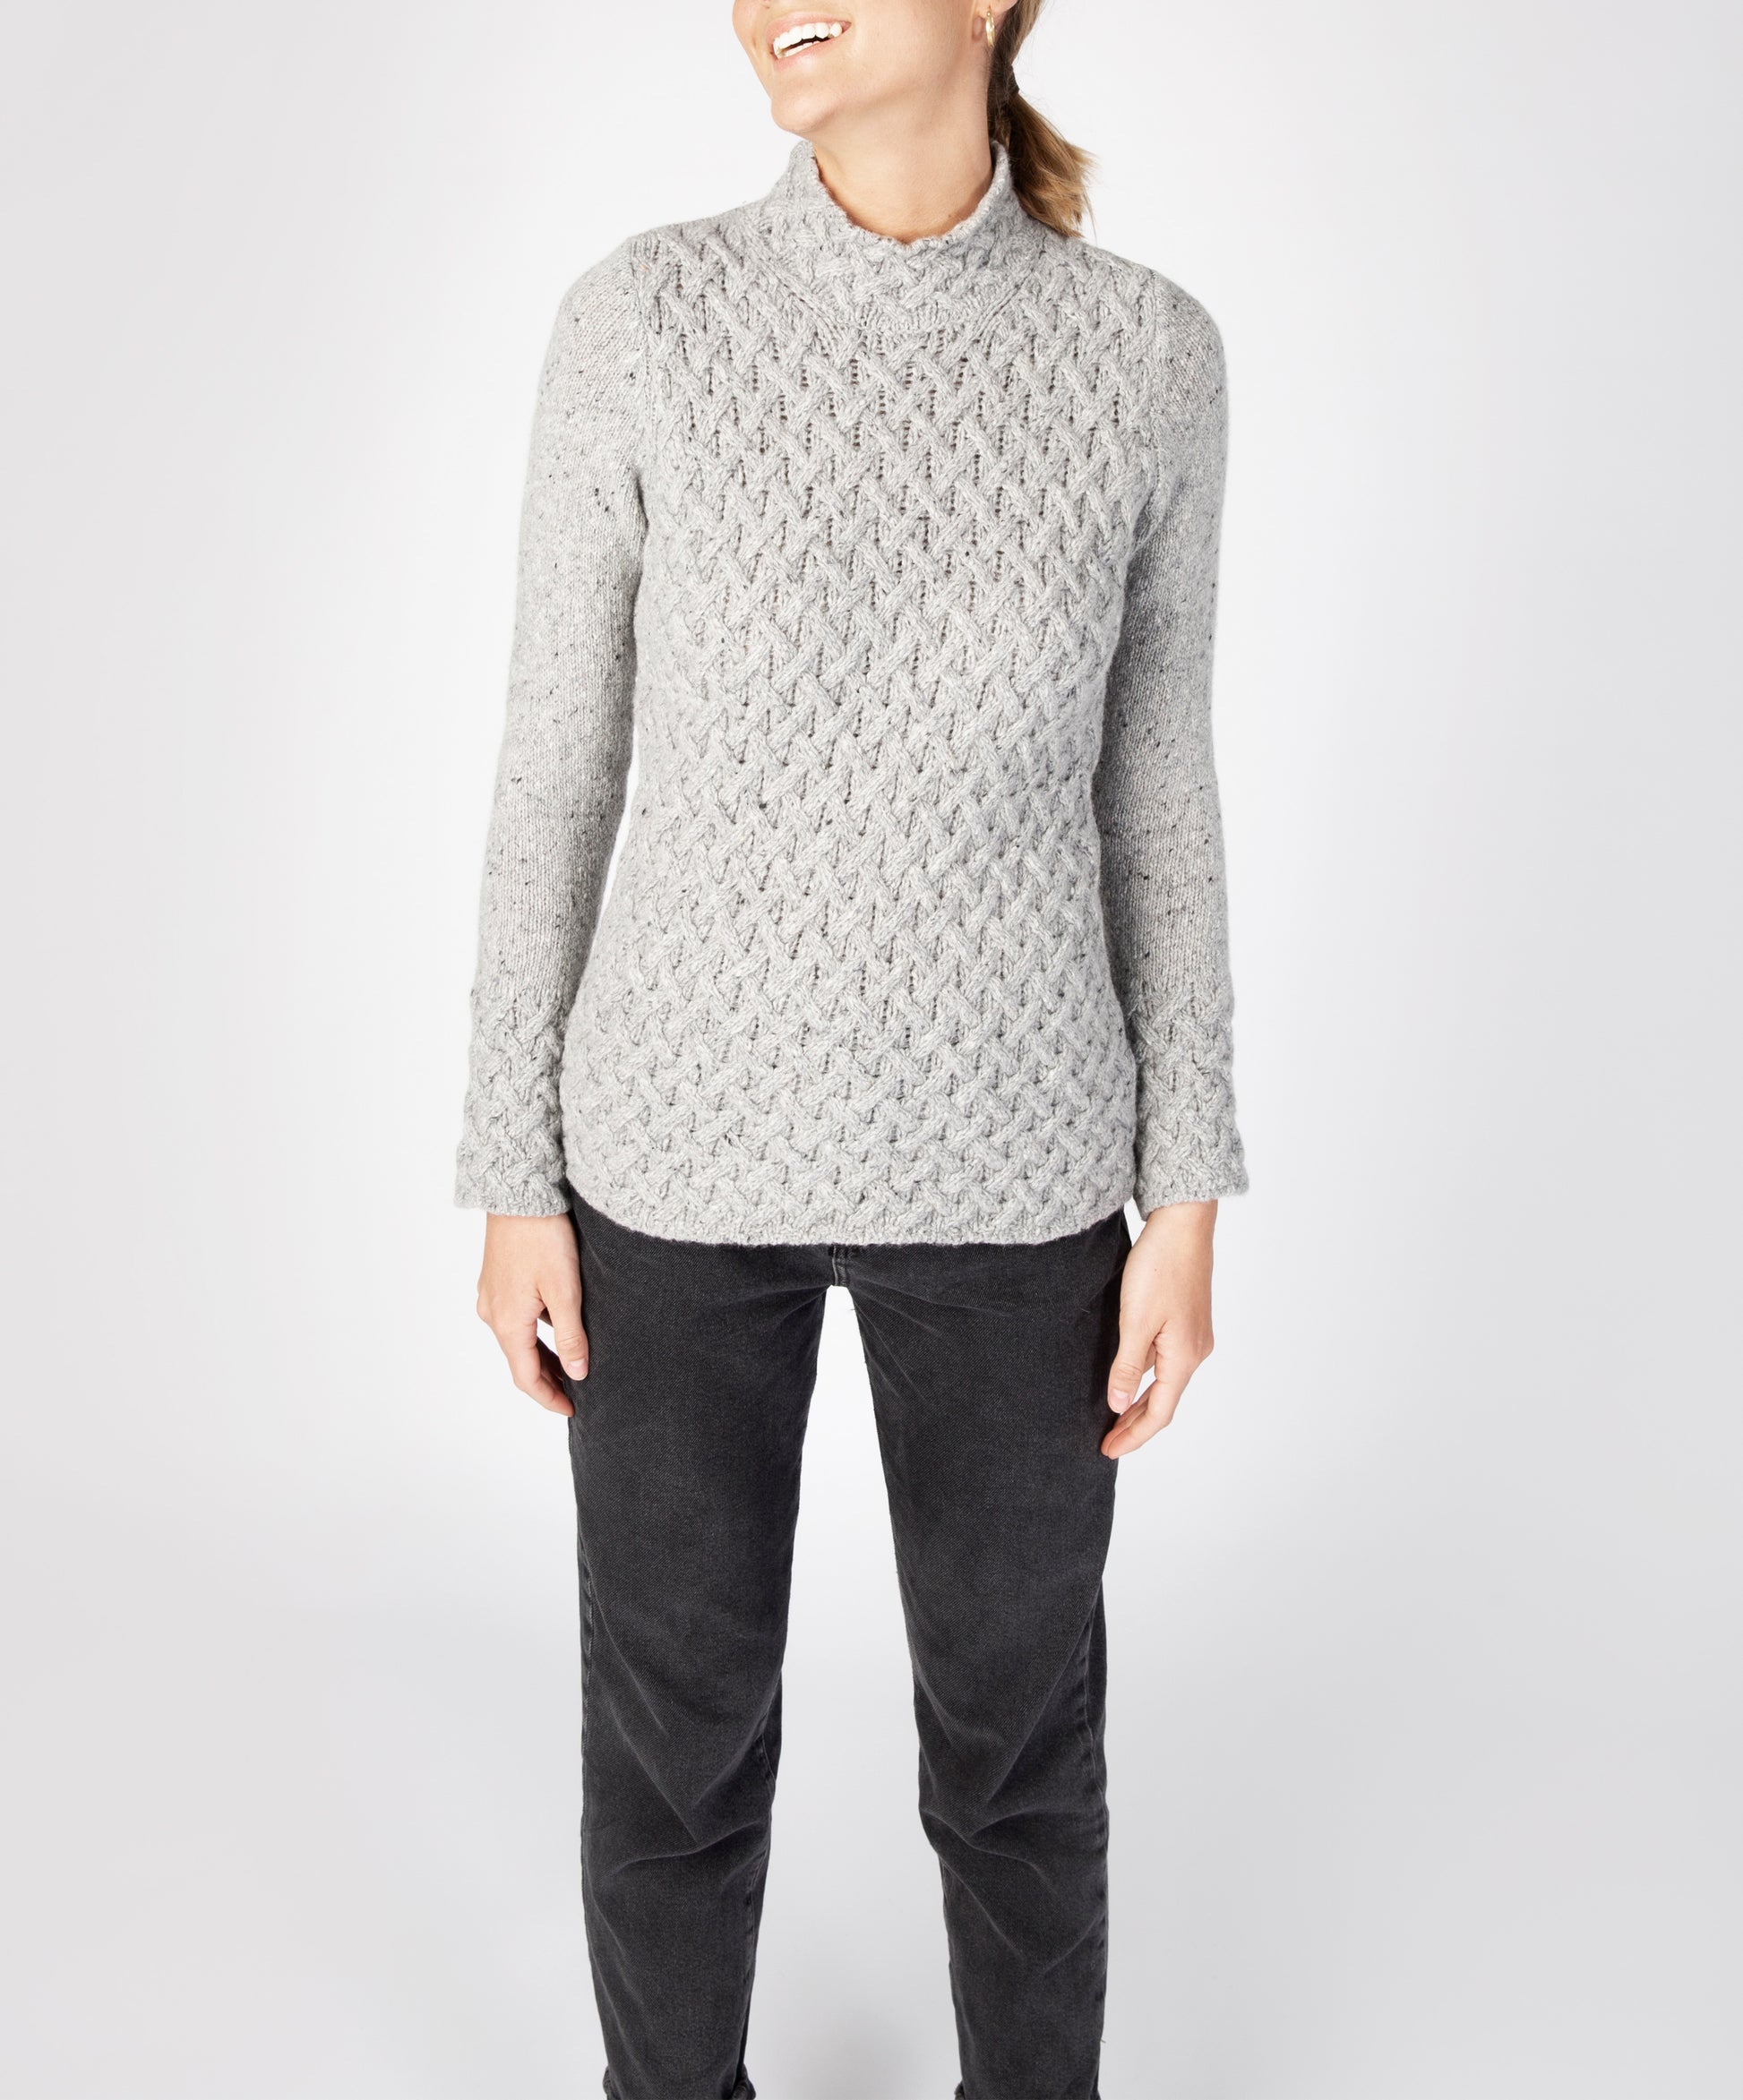 IrelandsEye Knitwear Trellis Sweater Light Grey